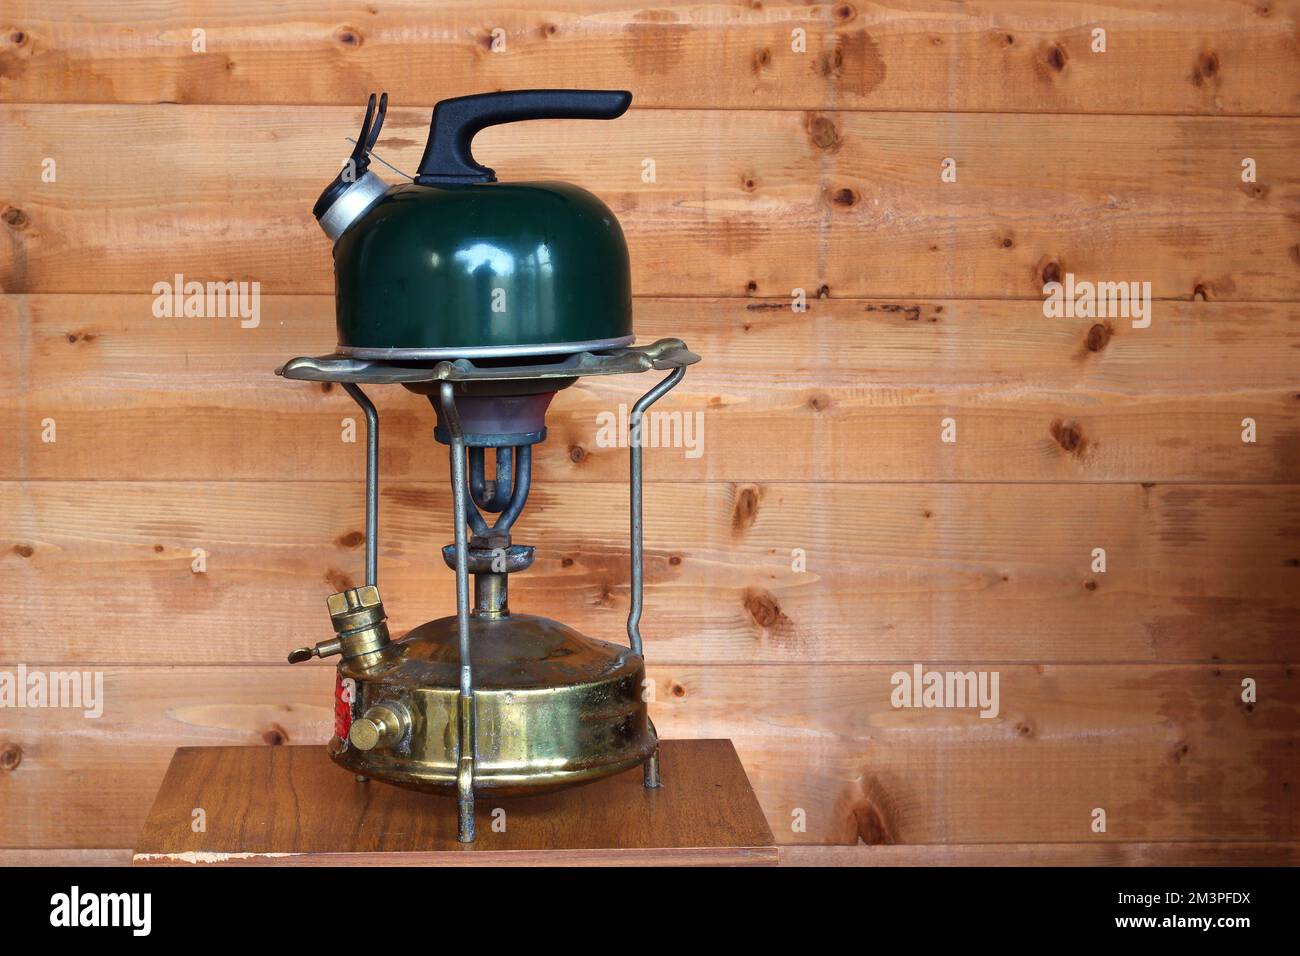 Der Wasserkocher erhitzt sich auf einem Primus-Herd für eine Tasse Tee oder Kaffee. Stockfoto